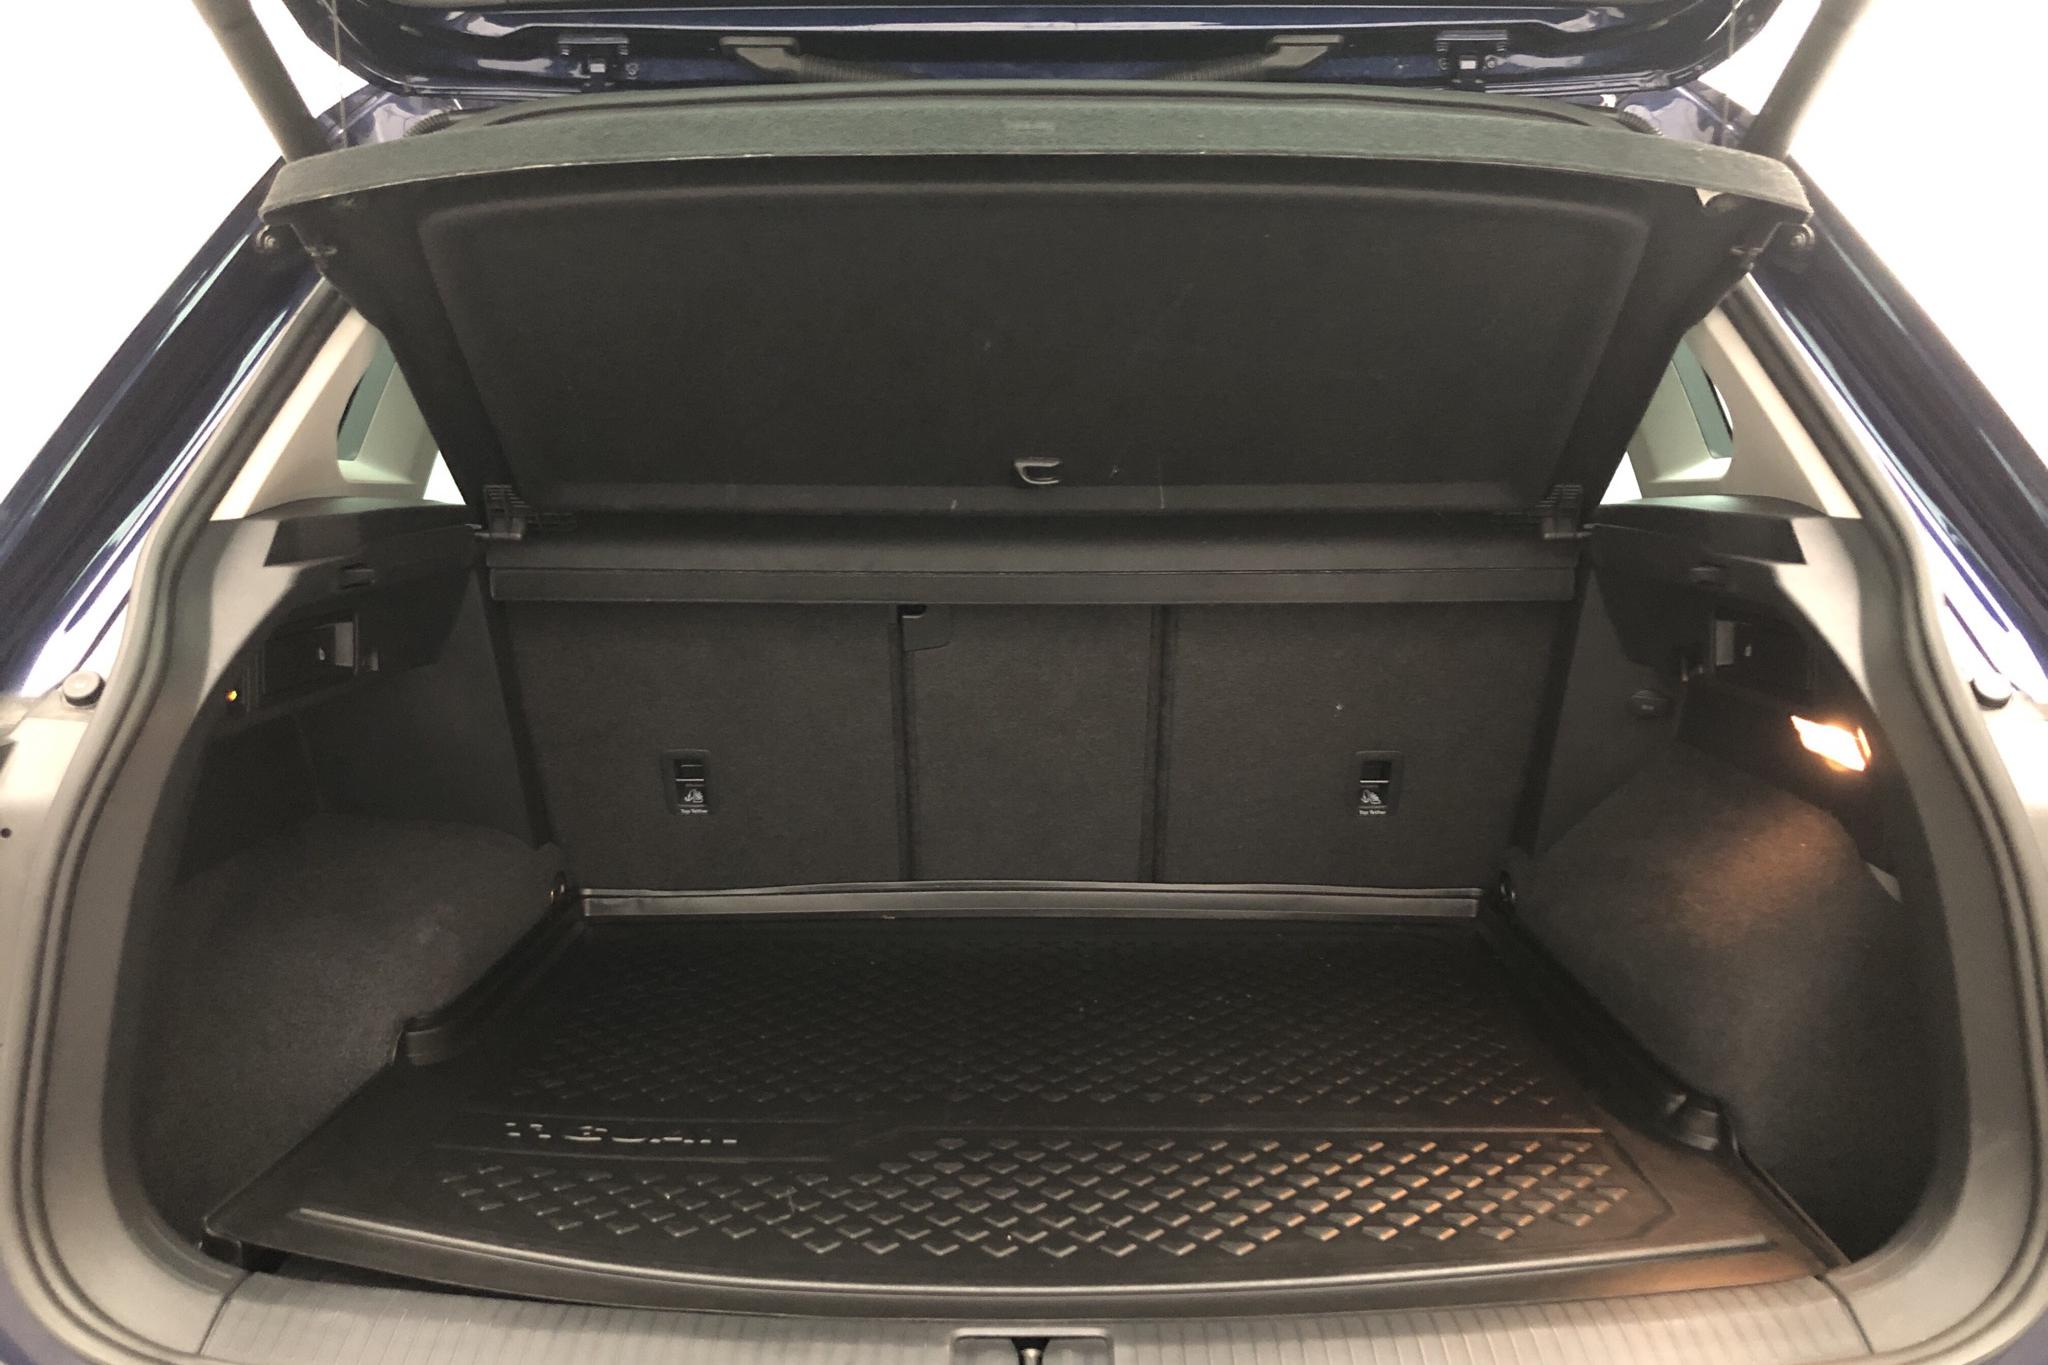 VW Tiguan 2.0 TDI 4MOTION (190hk) - 4 390 mil - Automat - blå - 2019